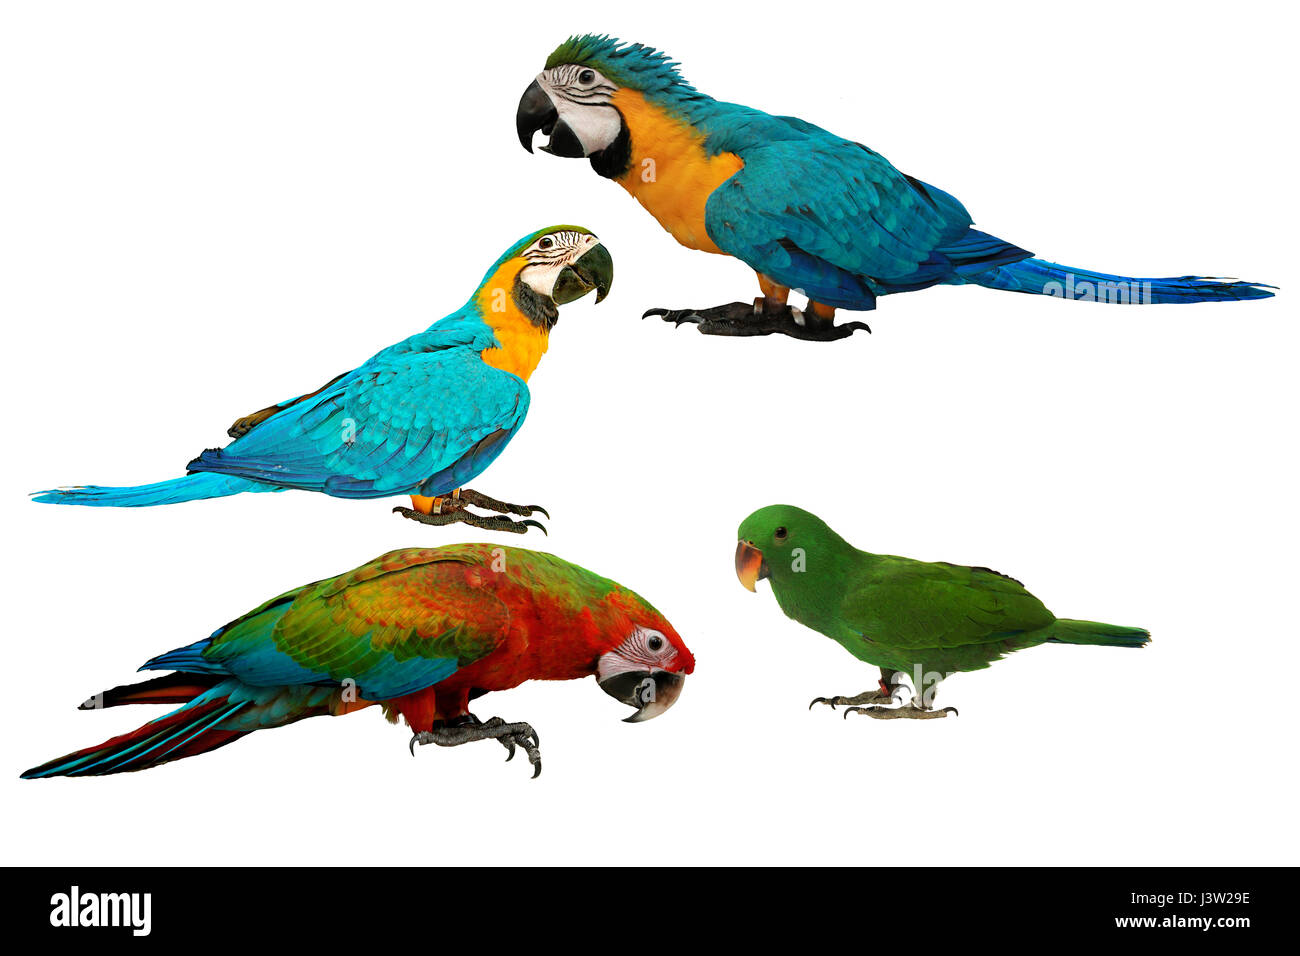 Pappagalli colorati come 2 maschio blu e giallo macaw parrot , rosso e blu macaw pappagallo e maschio pappagallo eclectus isolati su sfondo bianco. Foto Stock